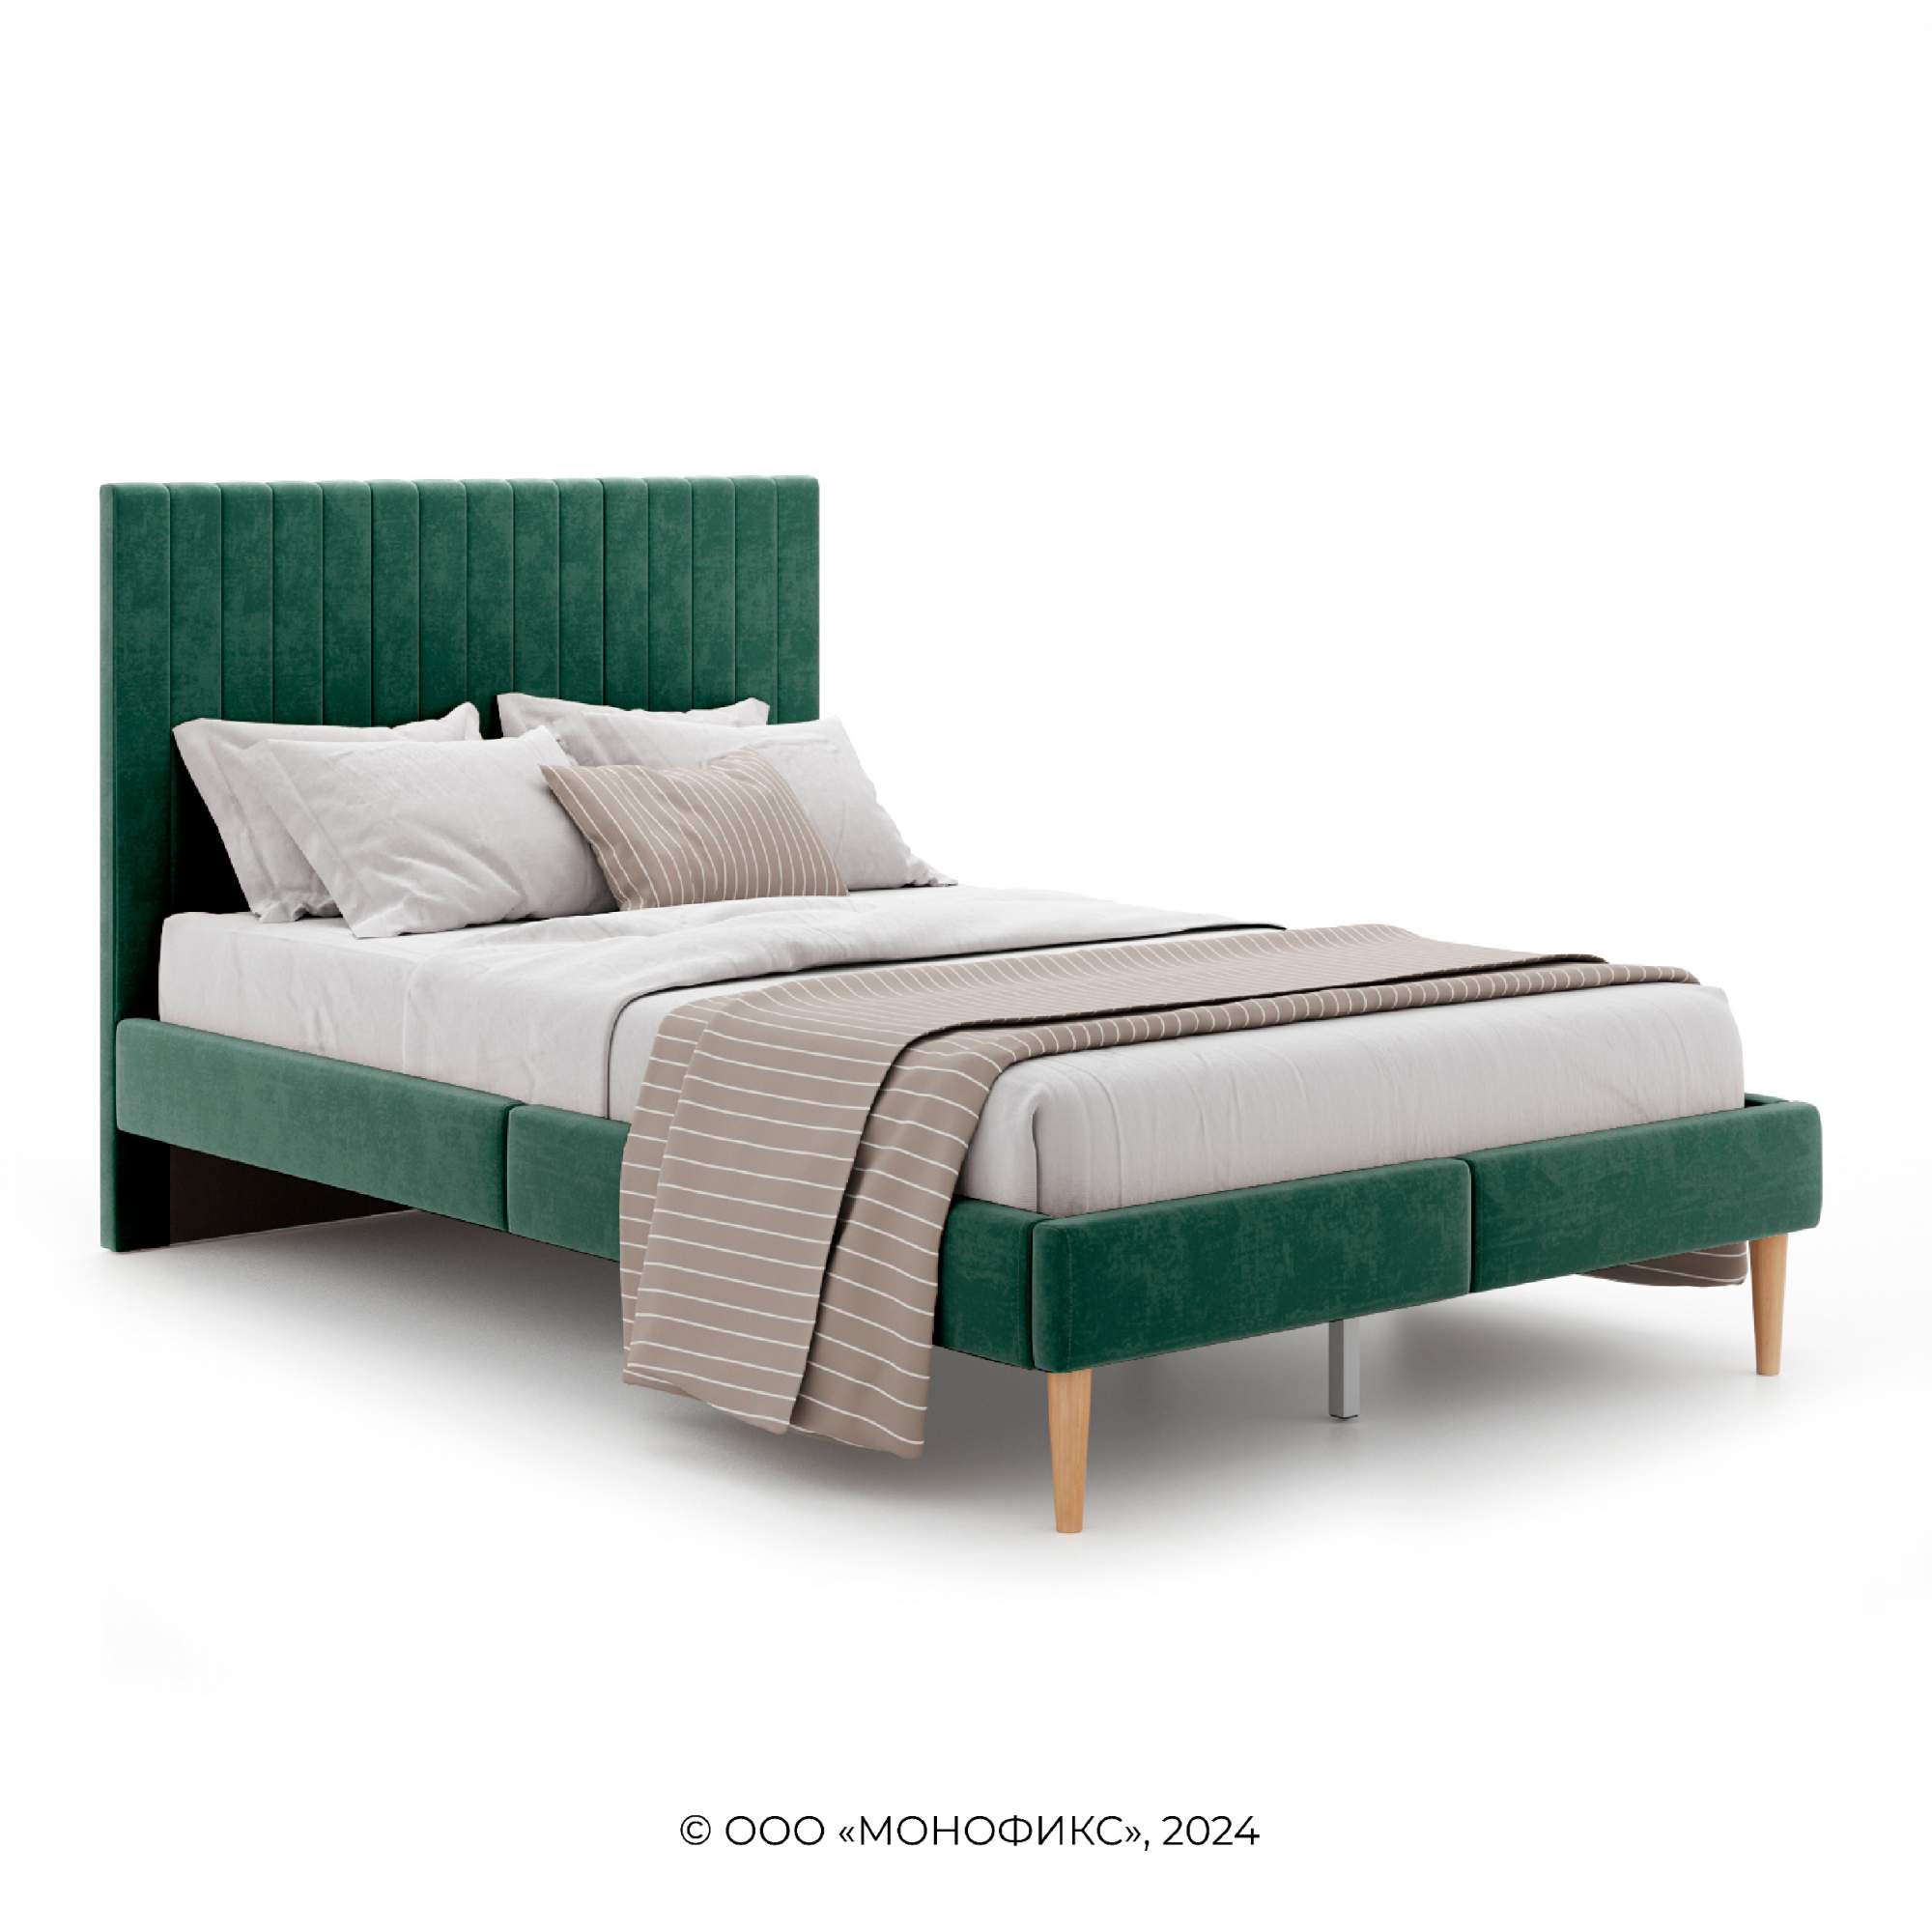 Кровать MONOFIX АММА велюр зеленый, 120х200 - купить в Москве, цены на Мегамаркет | 600015859060